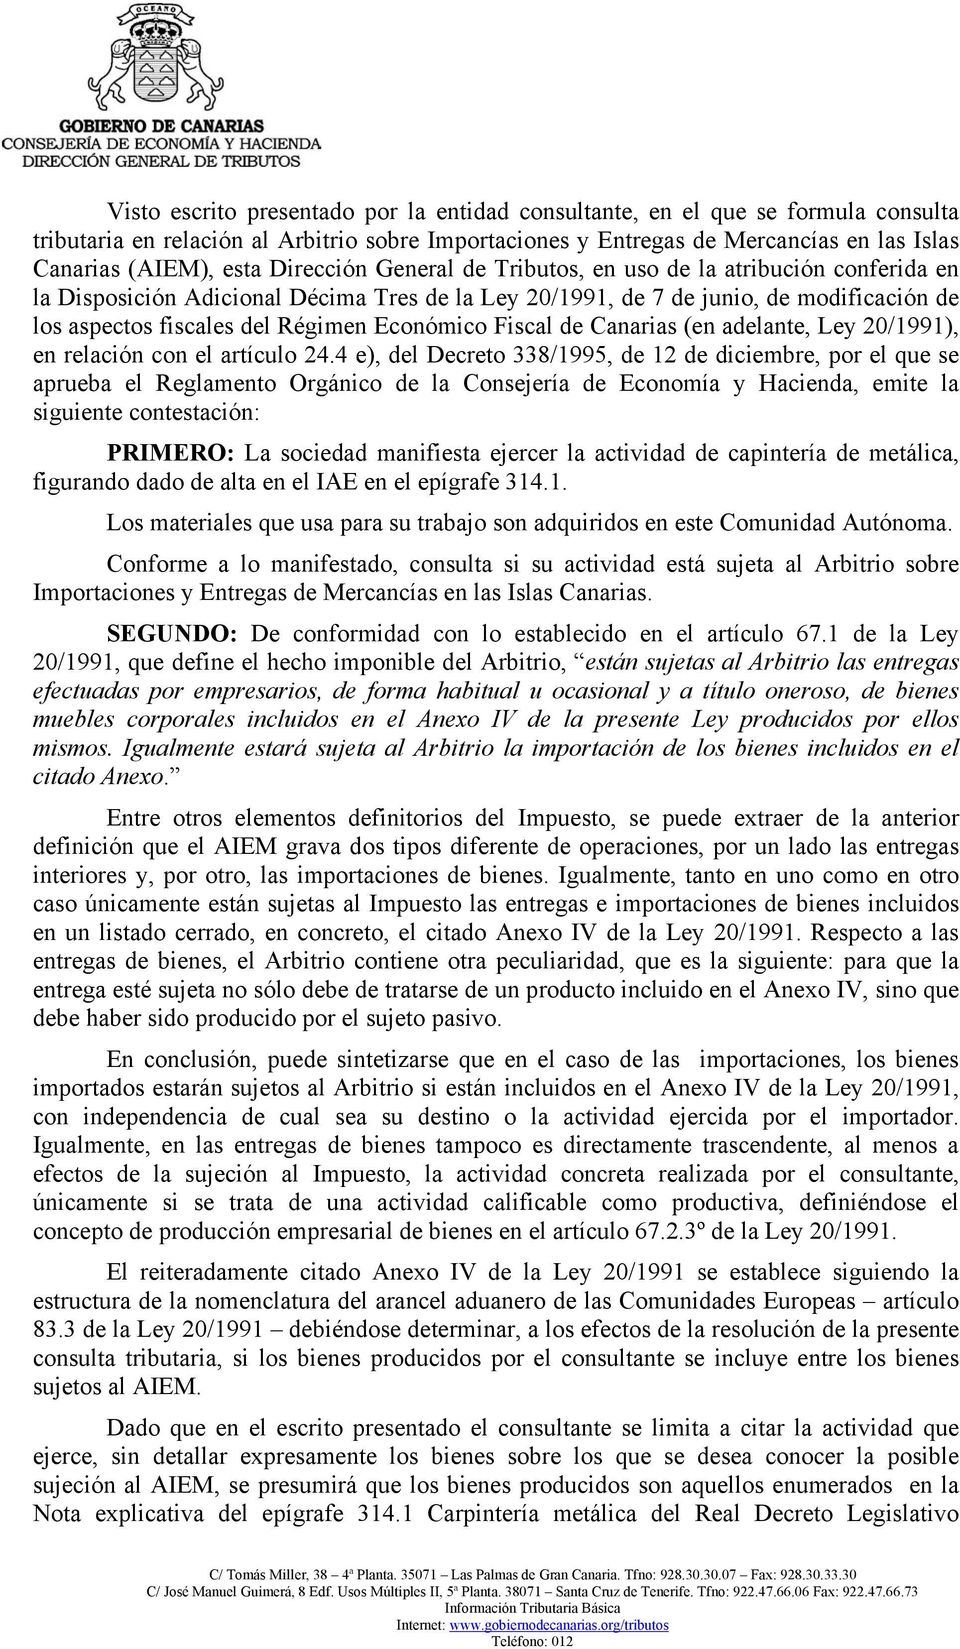 Económico Fiscal de Canarias (en adelante, Ley 20/1991), en relación con el artículo 24.